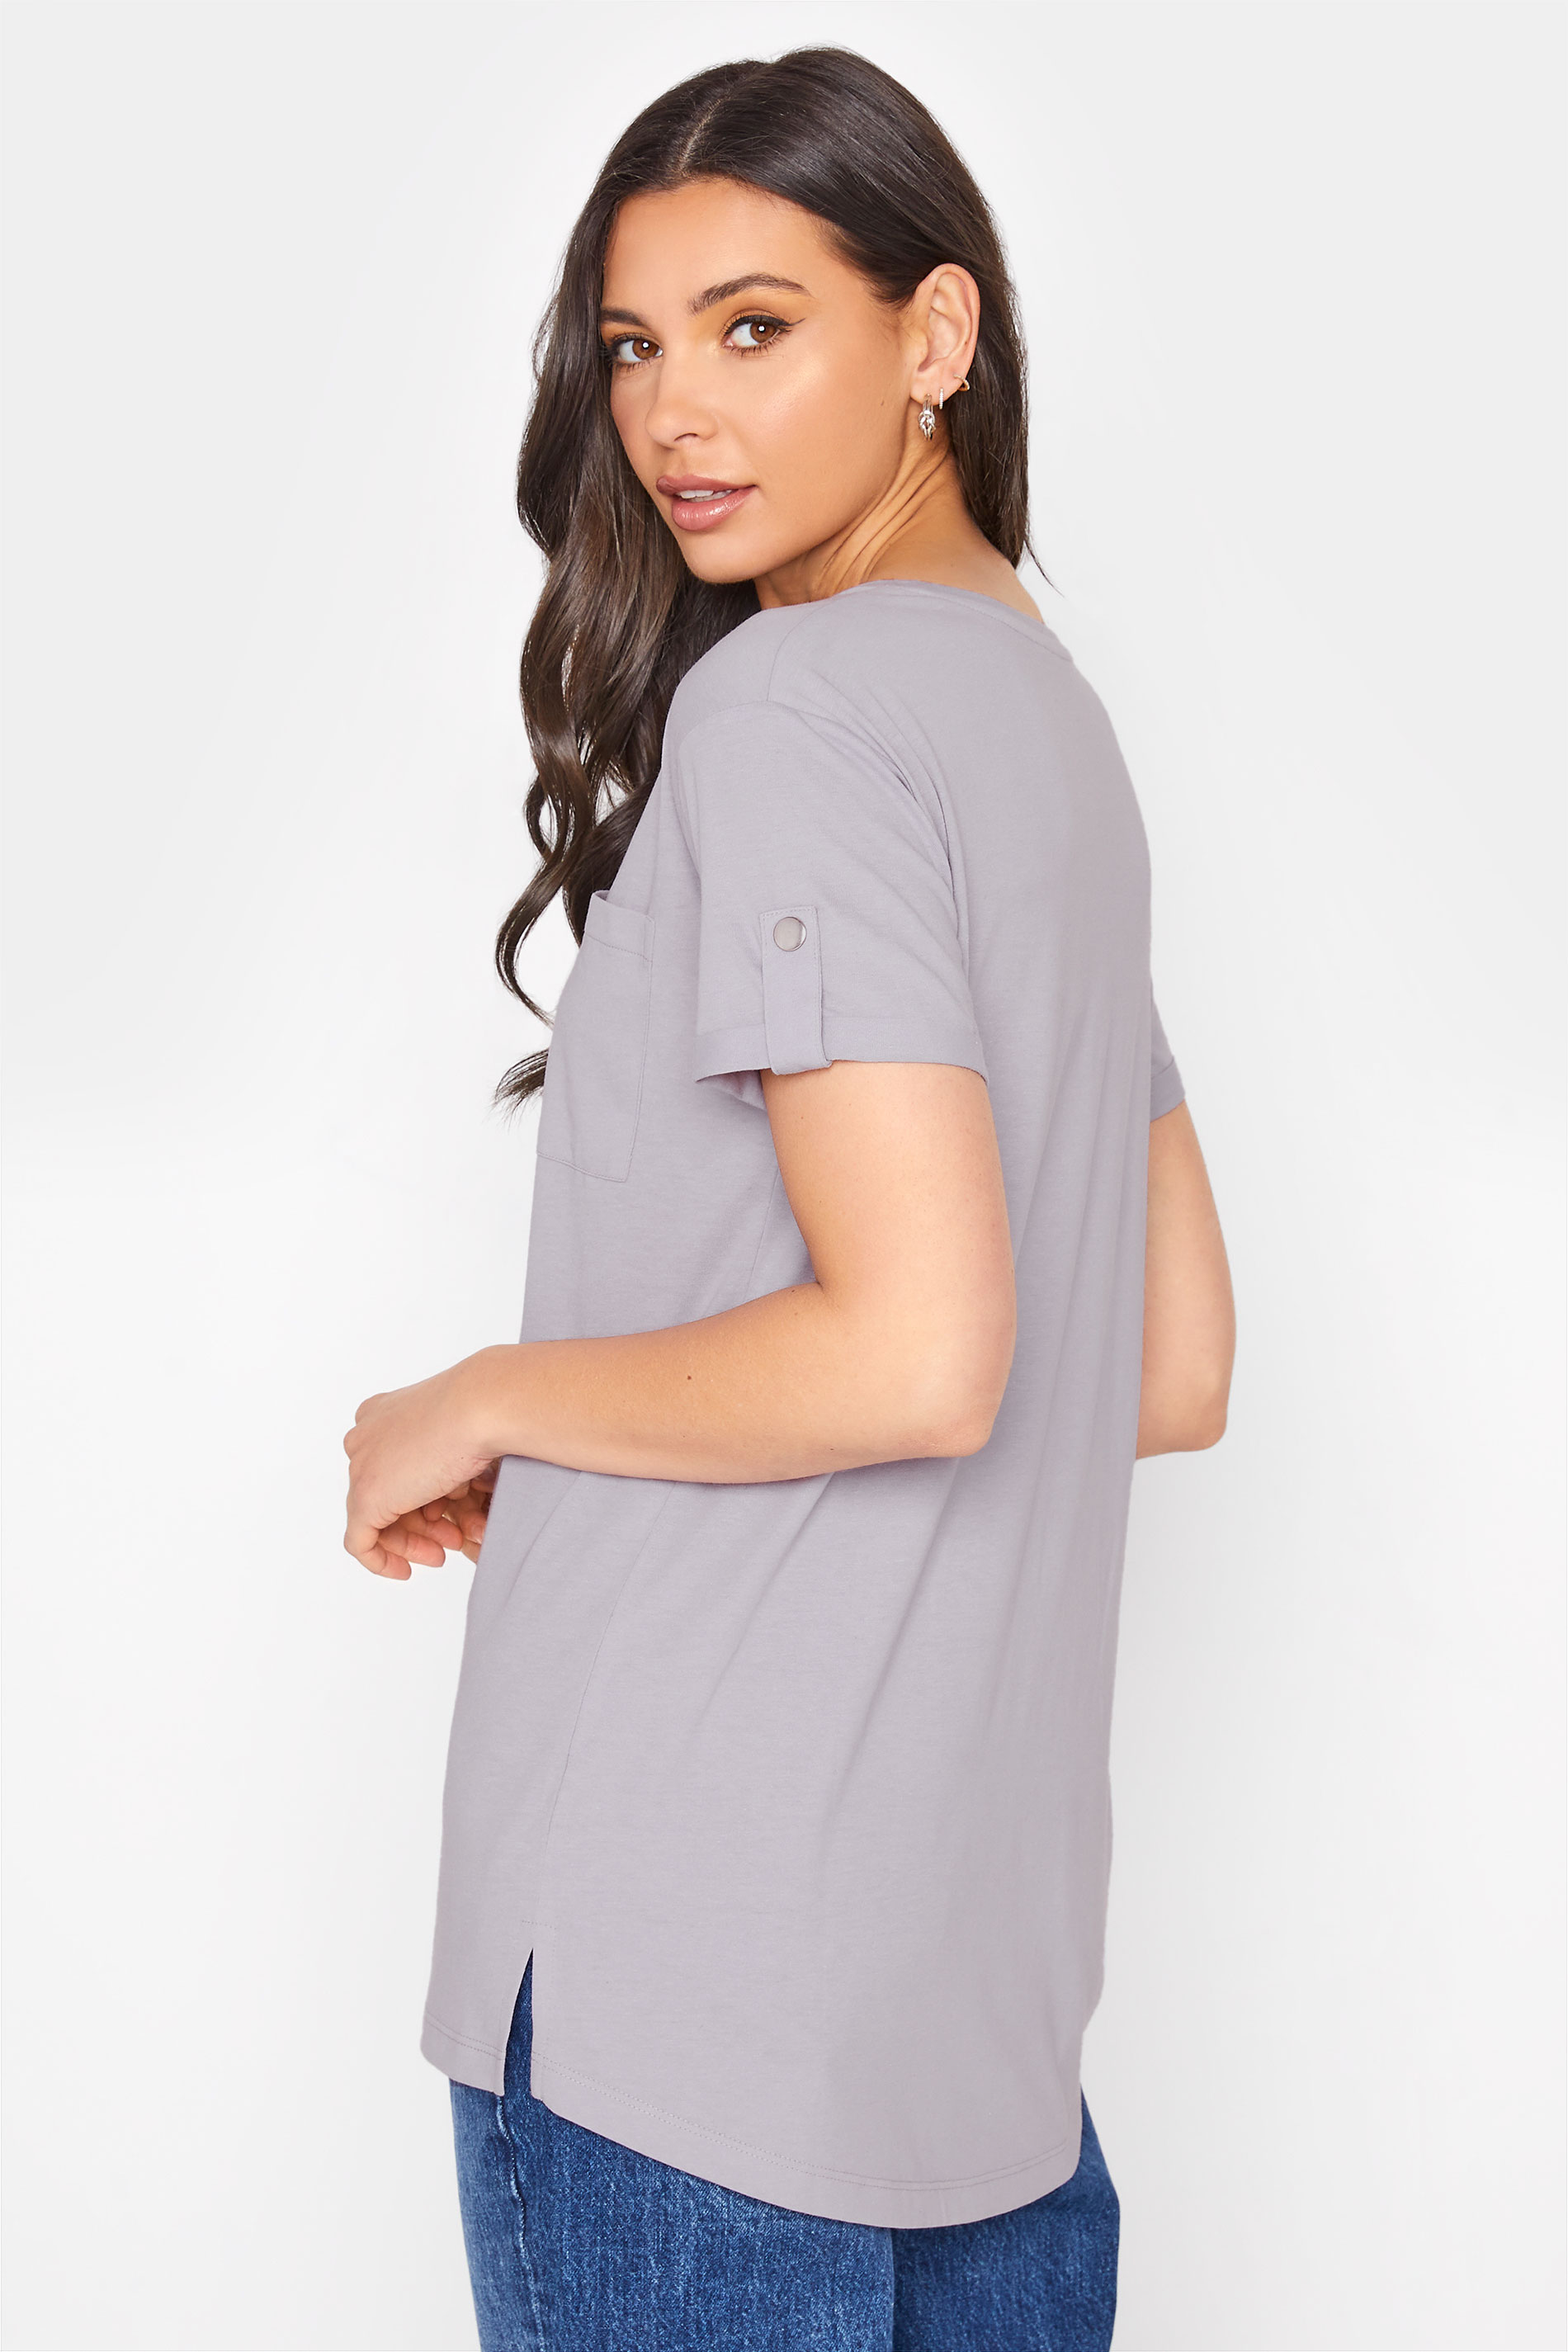 Tall Women's LTS Light Grey Short Sleeve Pocket T-Shirt | Long Tall Sally 3